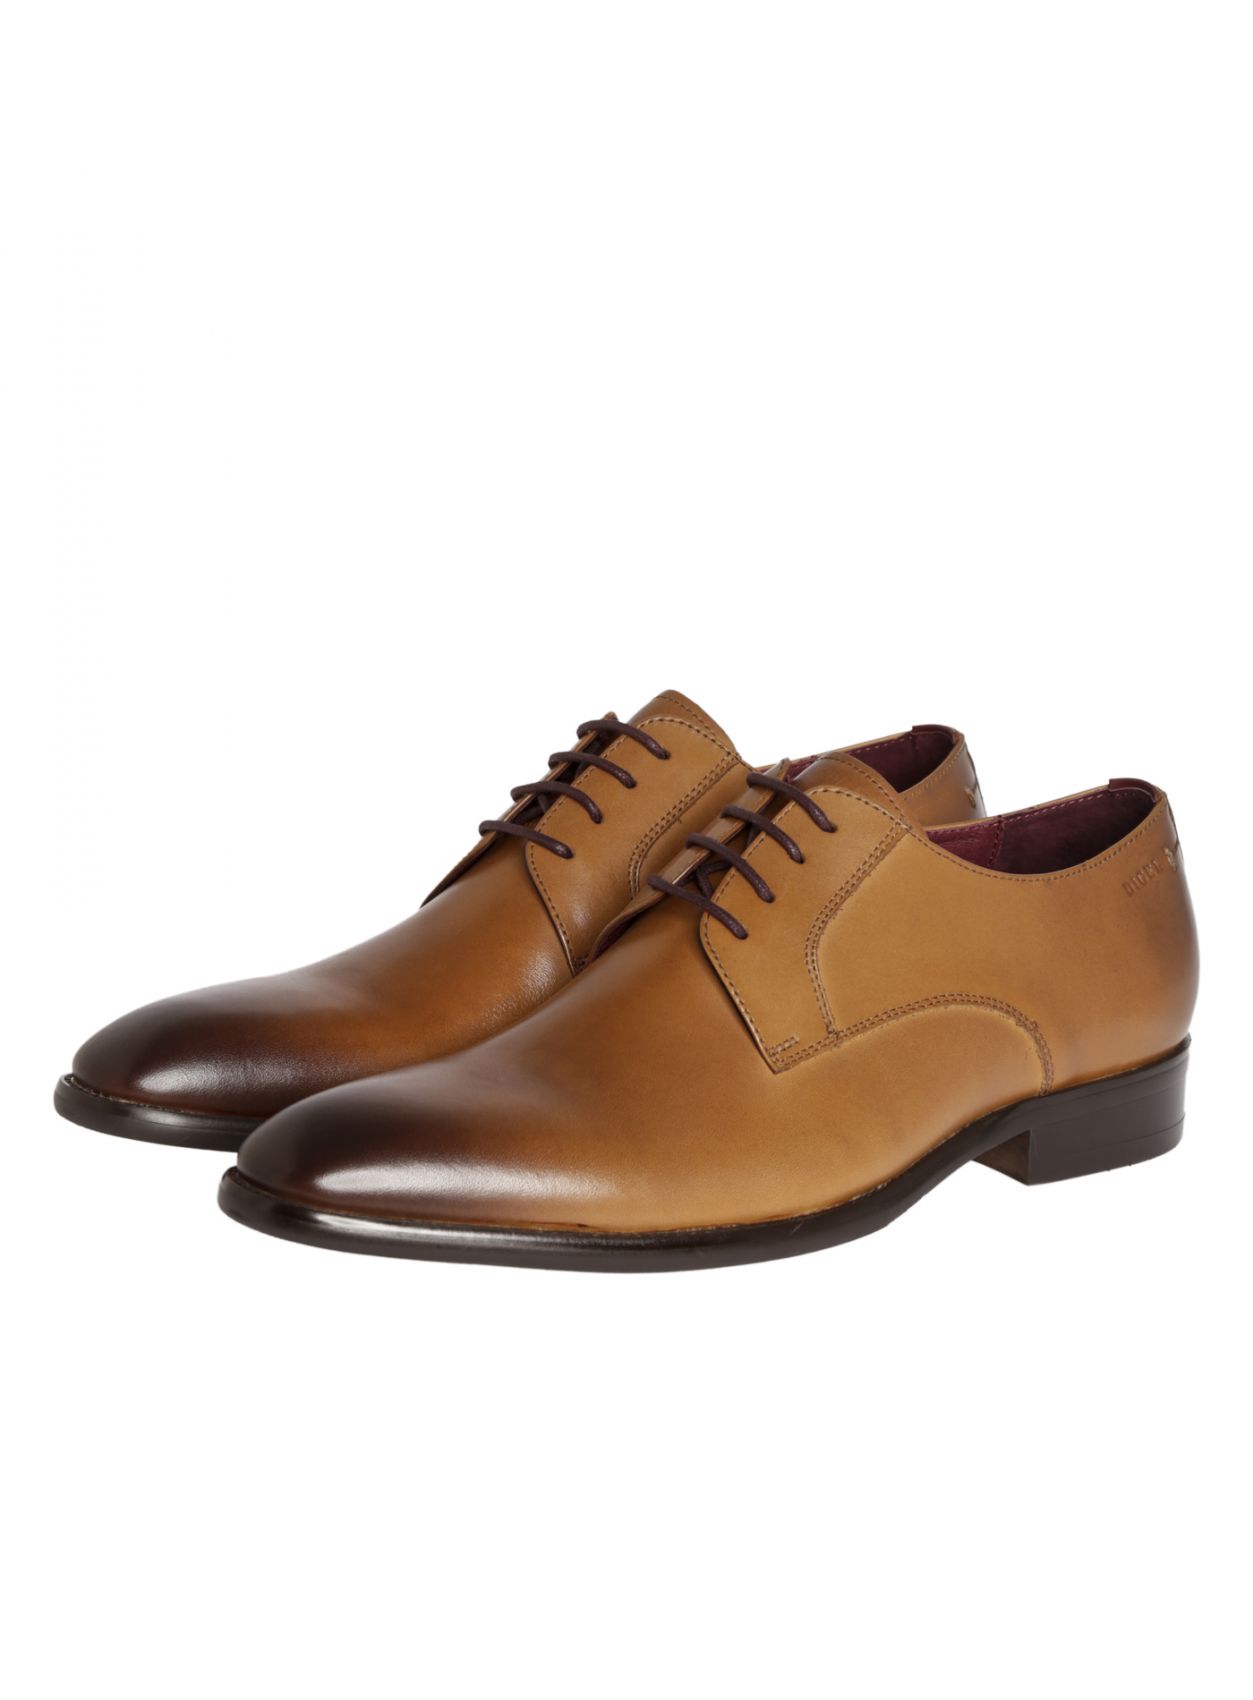 Men's elegant Digel color cognac shoe in real leather